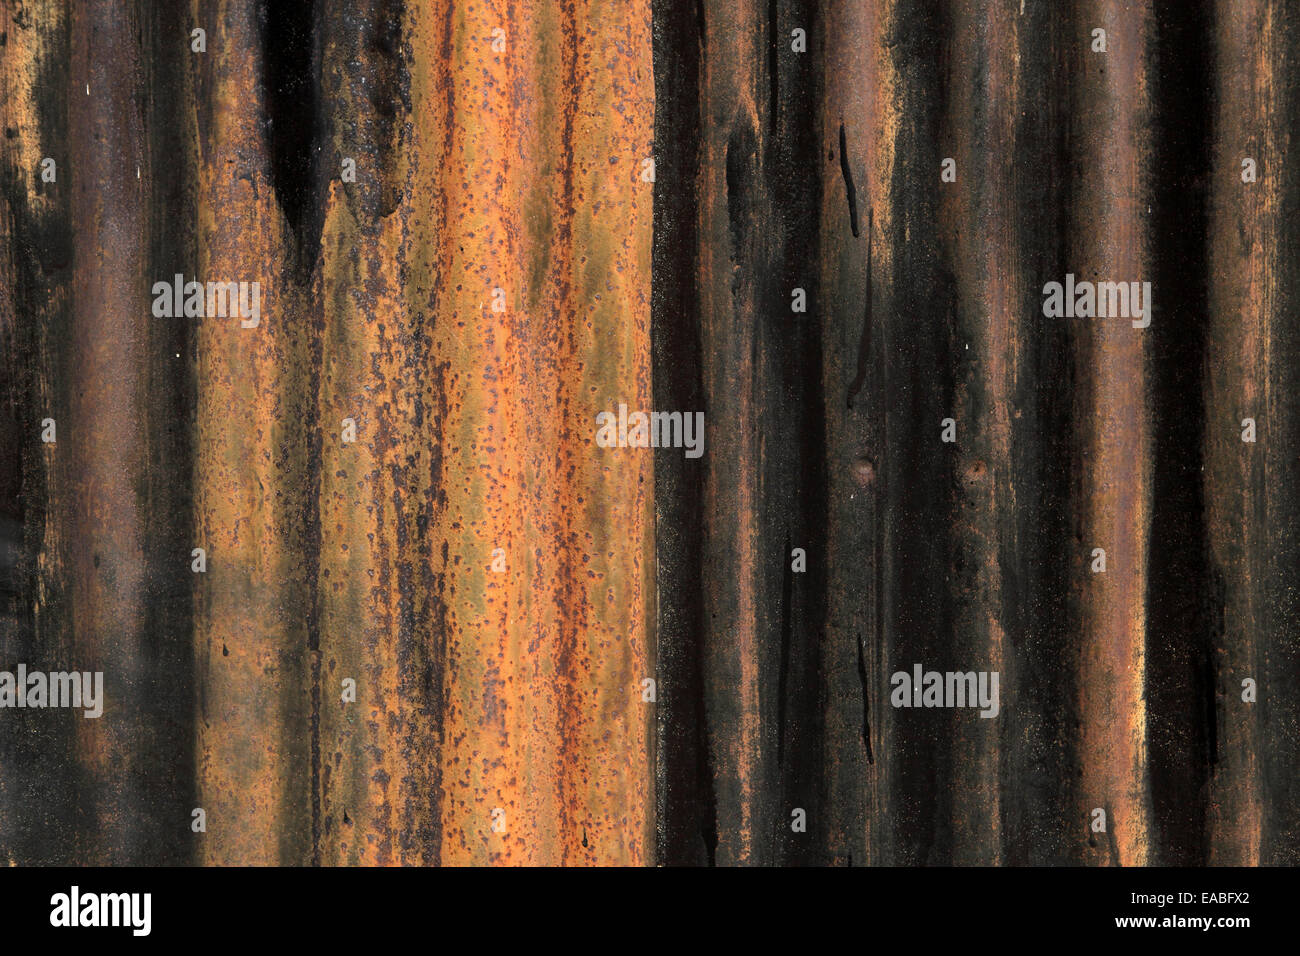 Corroído, Rusted metal de hierro corrugado, adecuado para el fondo. Foto de stock